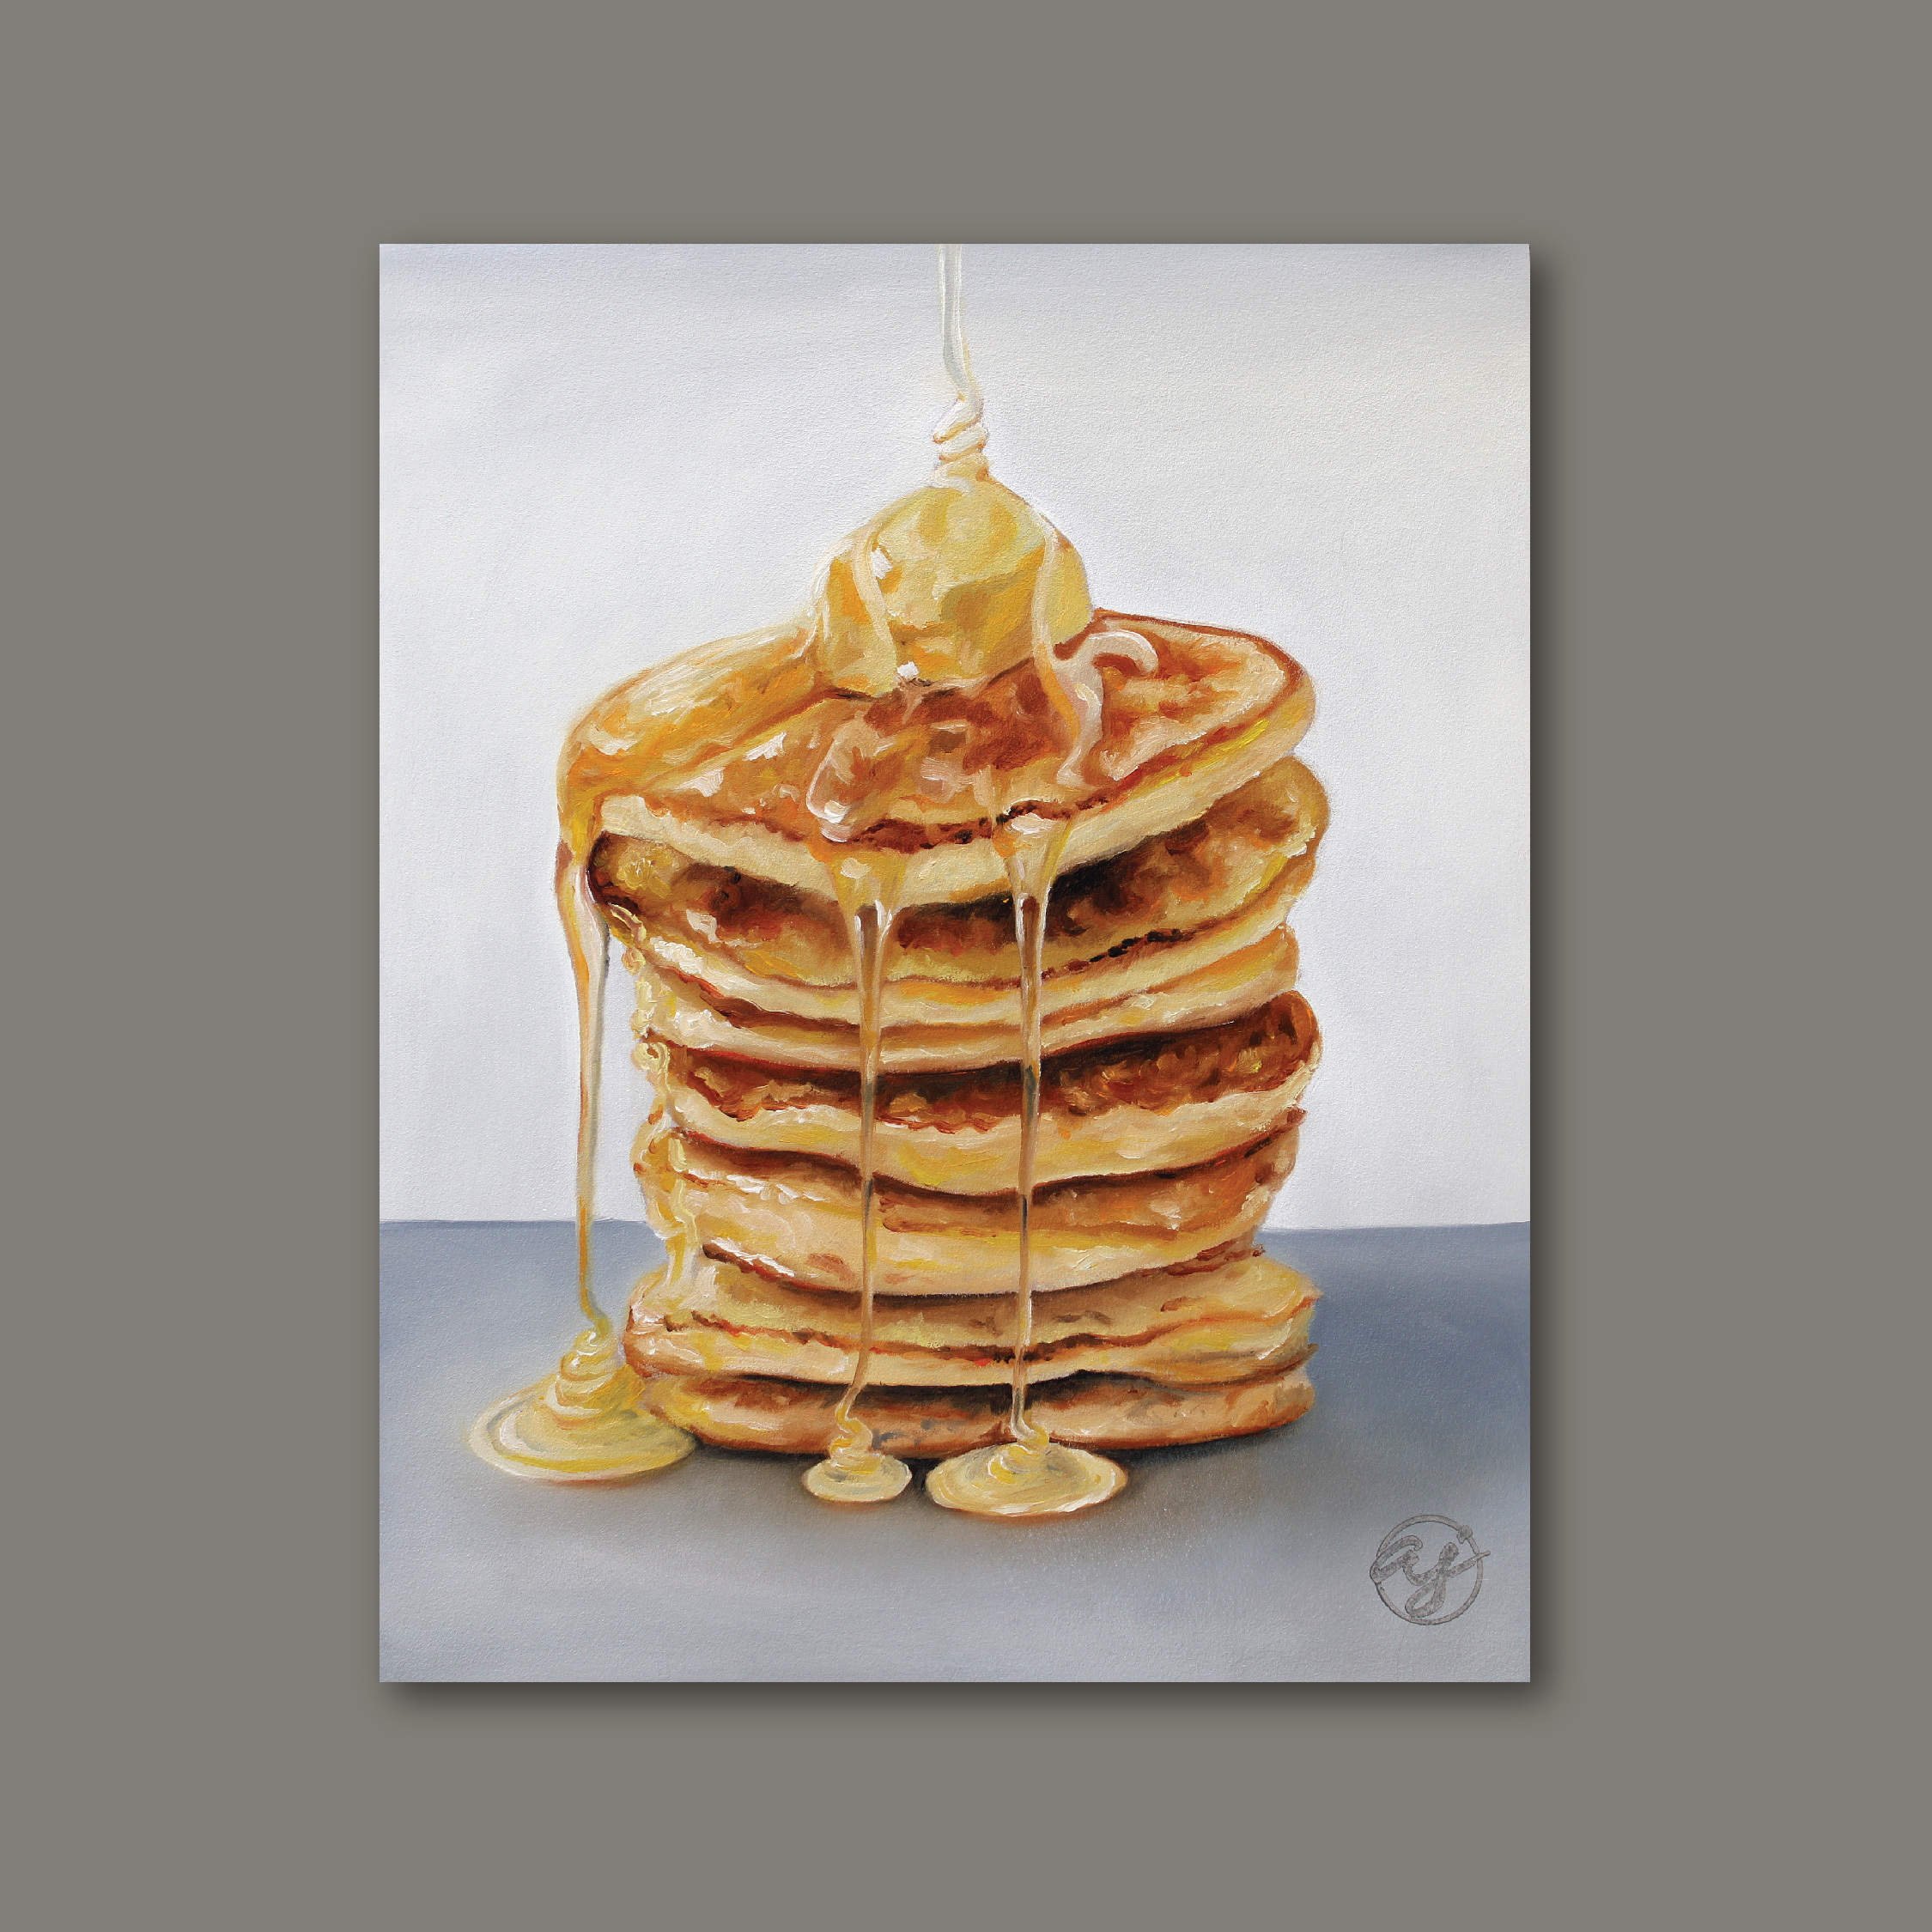 "Pancakes" 8x10 Original Oil Painting by Abra Johnson